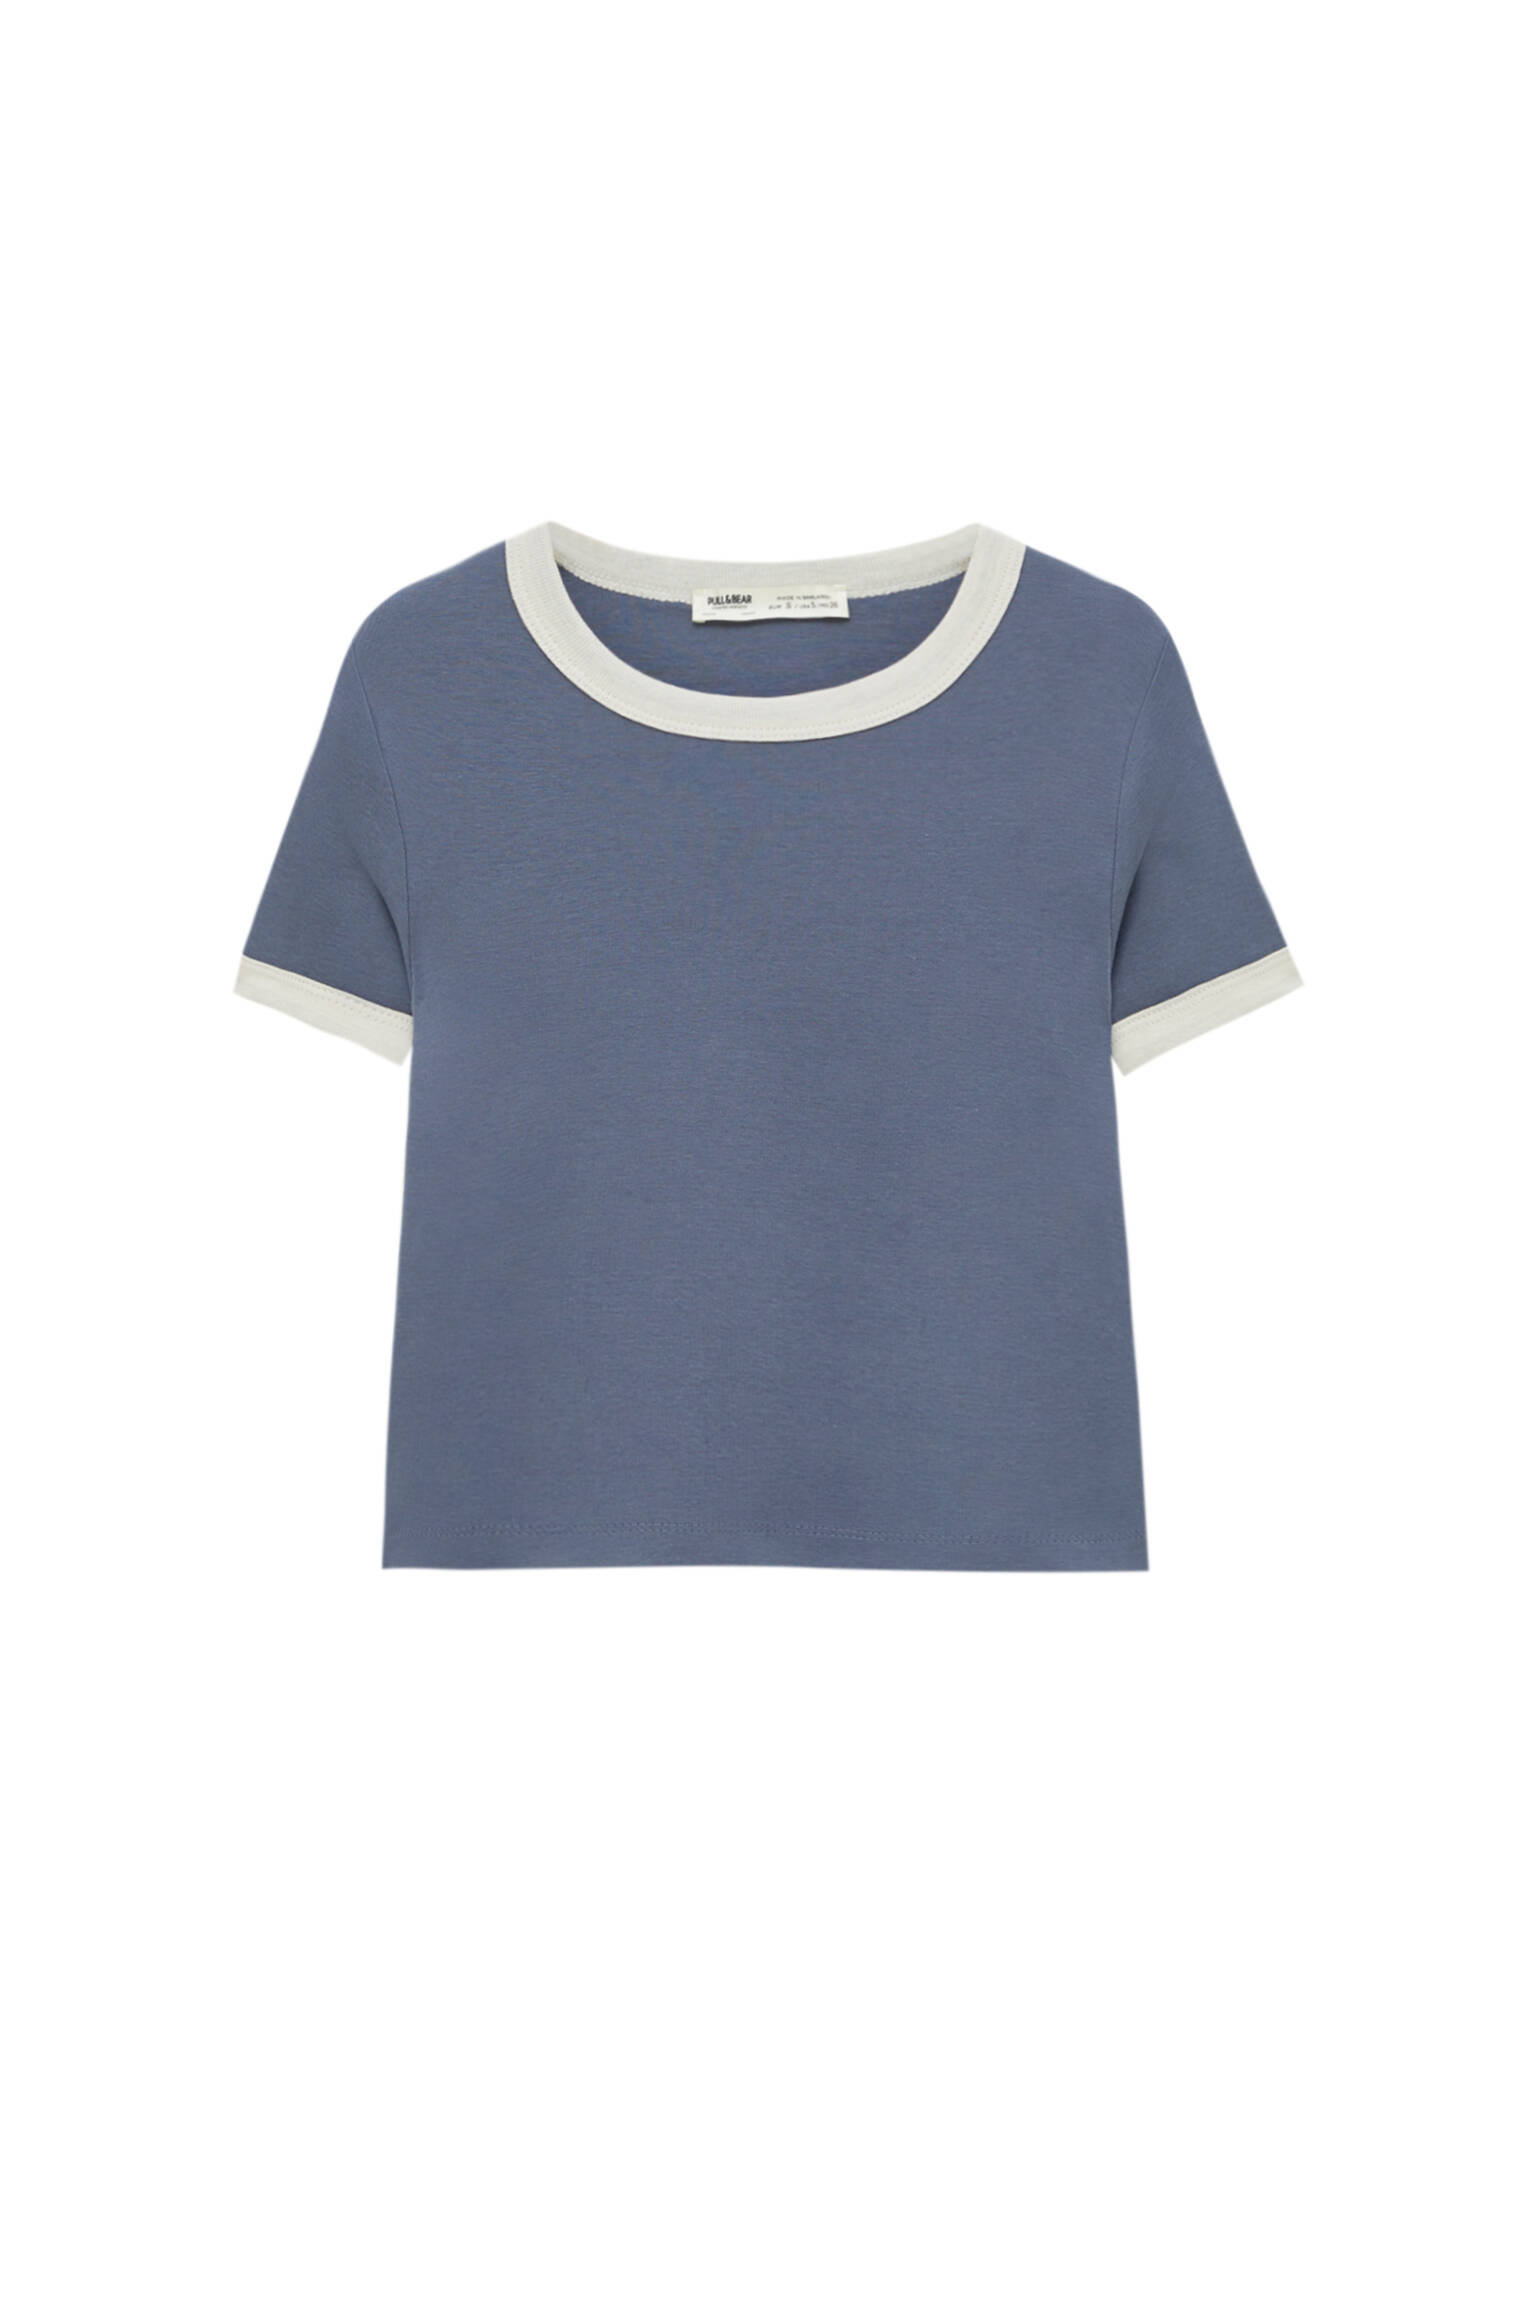 Pull&bear Femme T-shirt Court Basique à Manches Courtes Et Col Rond Avec Bord-côte Contrastant. Bleu